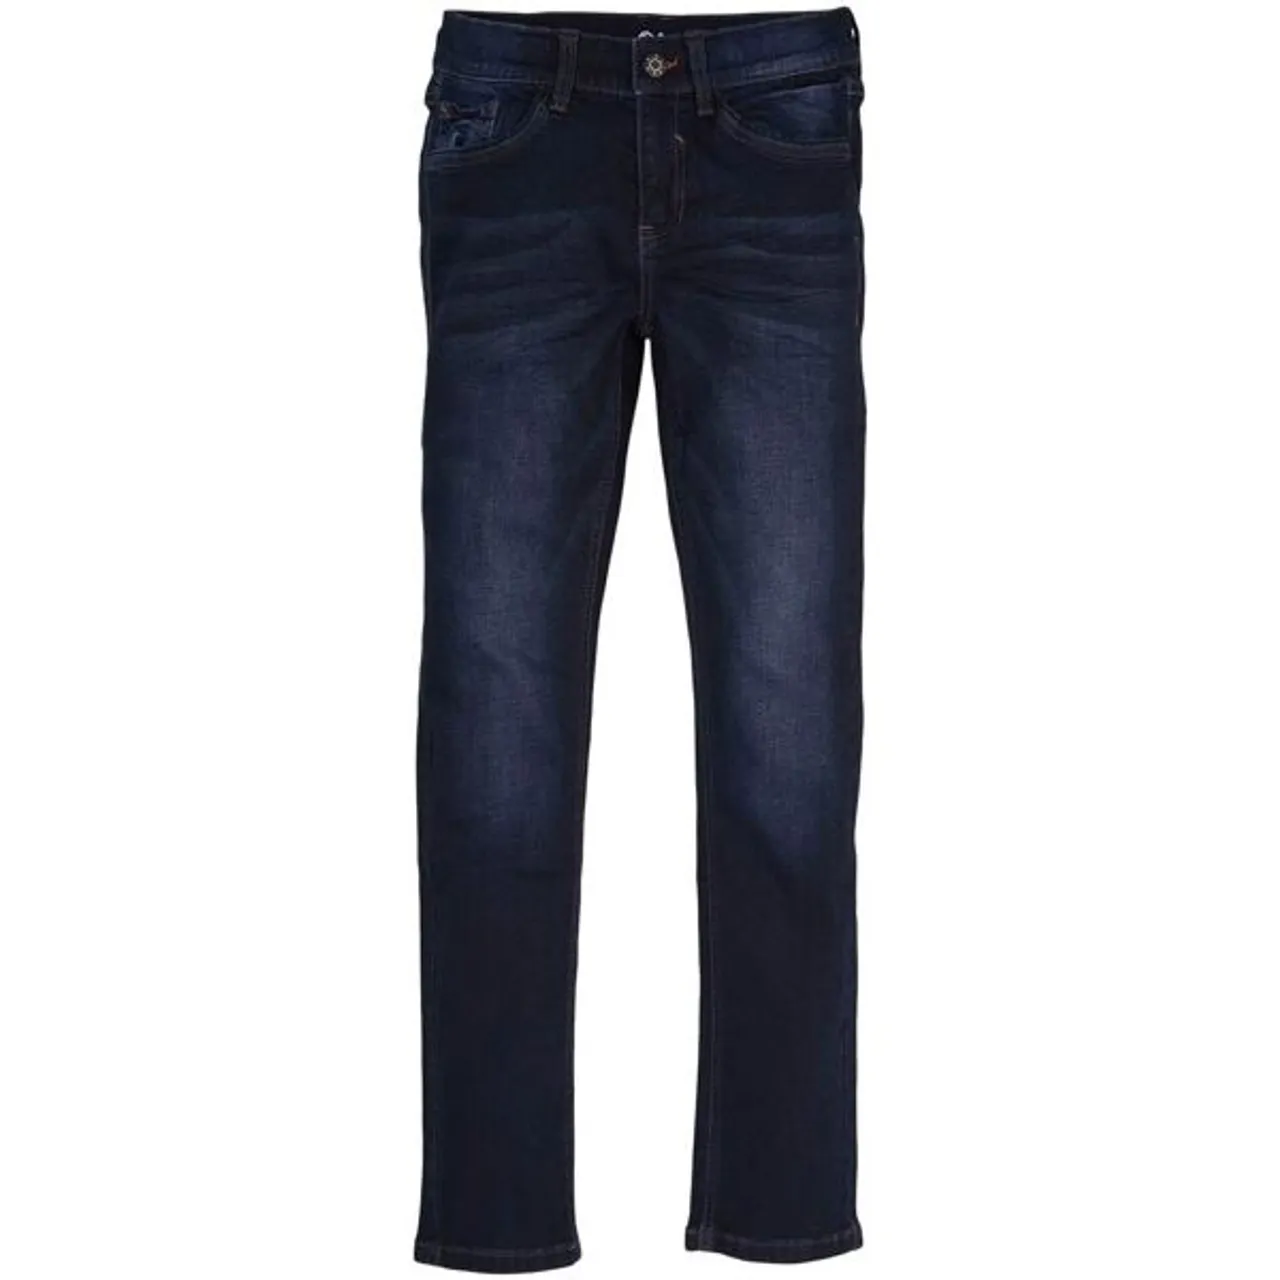 Skinny-fit-Jeans S.OLIVER JUNIOR Gr. 146, N-Gr, blau (blue) Jungen Jeans